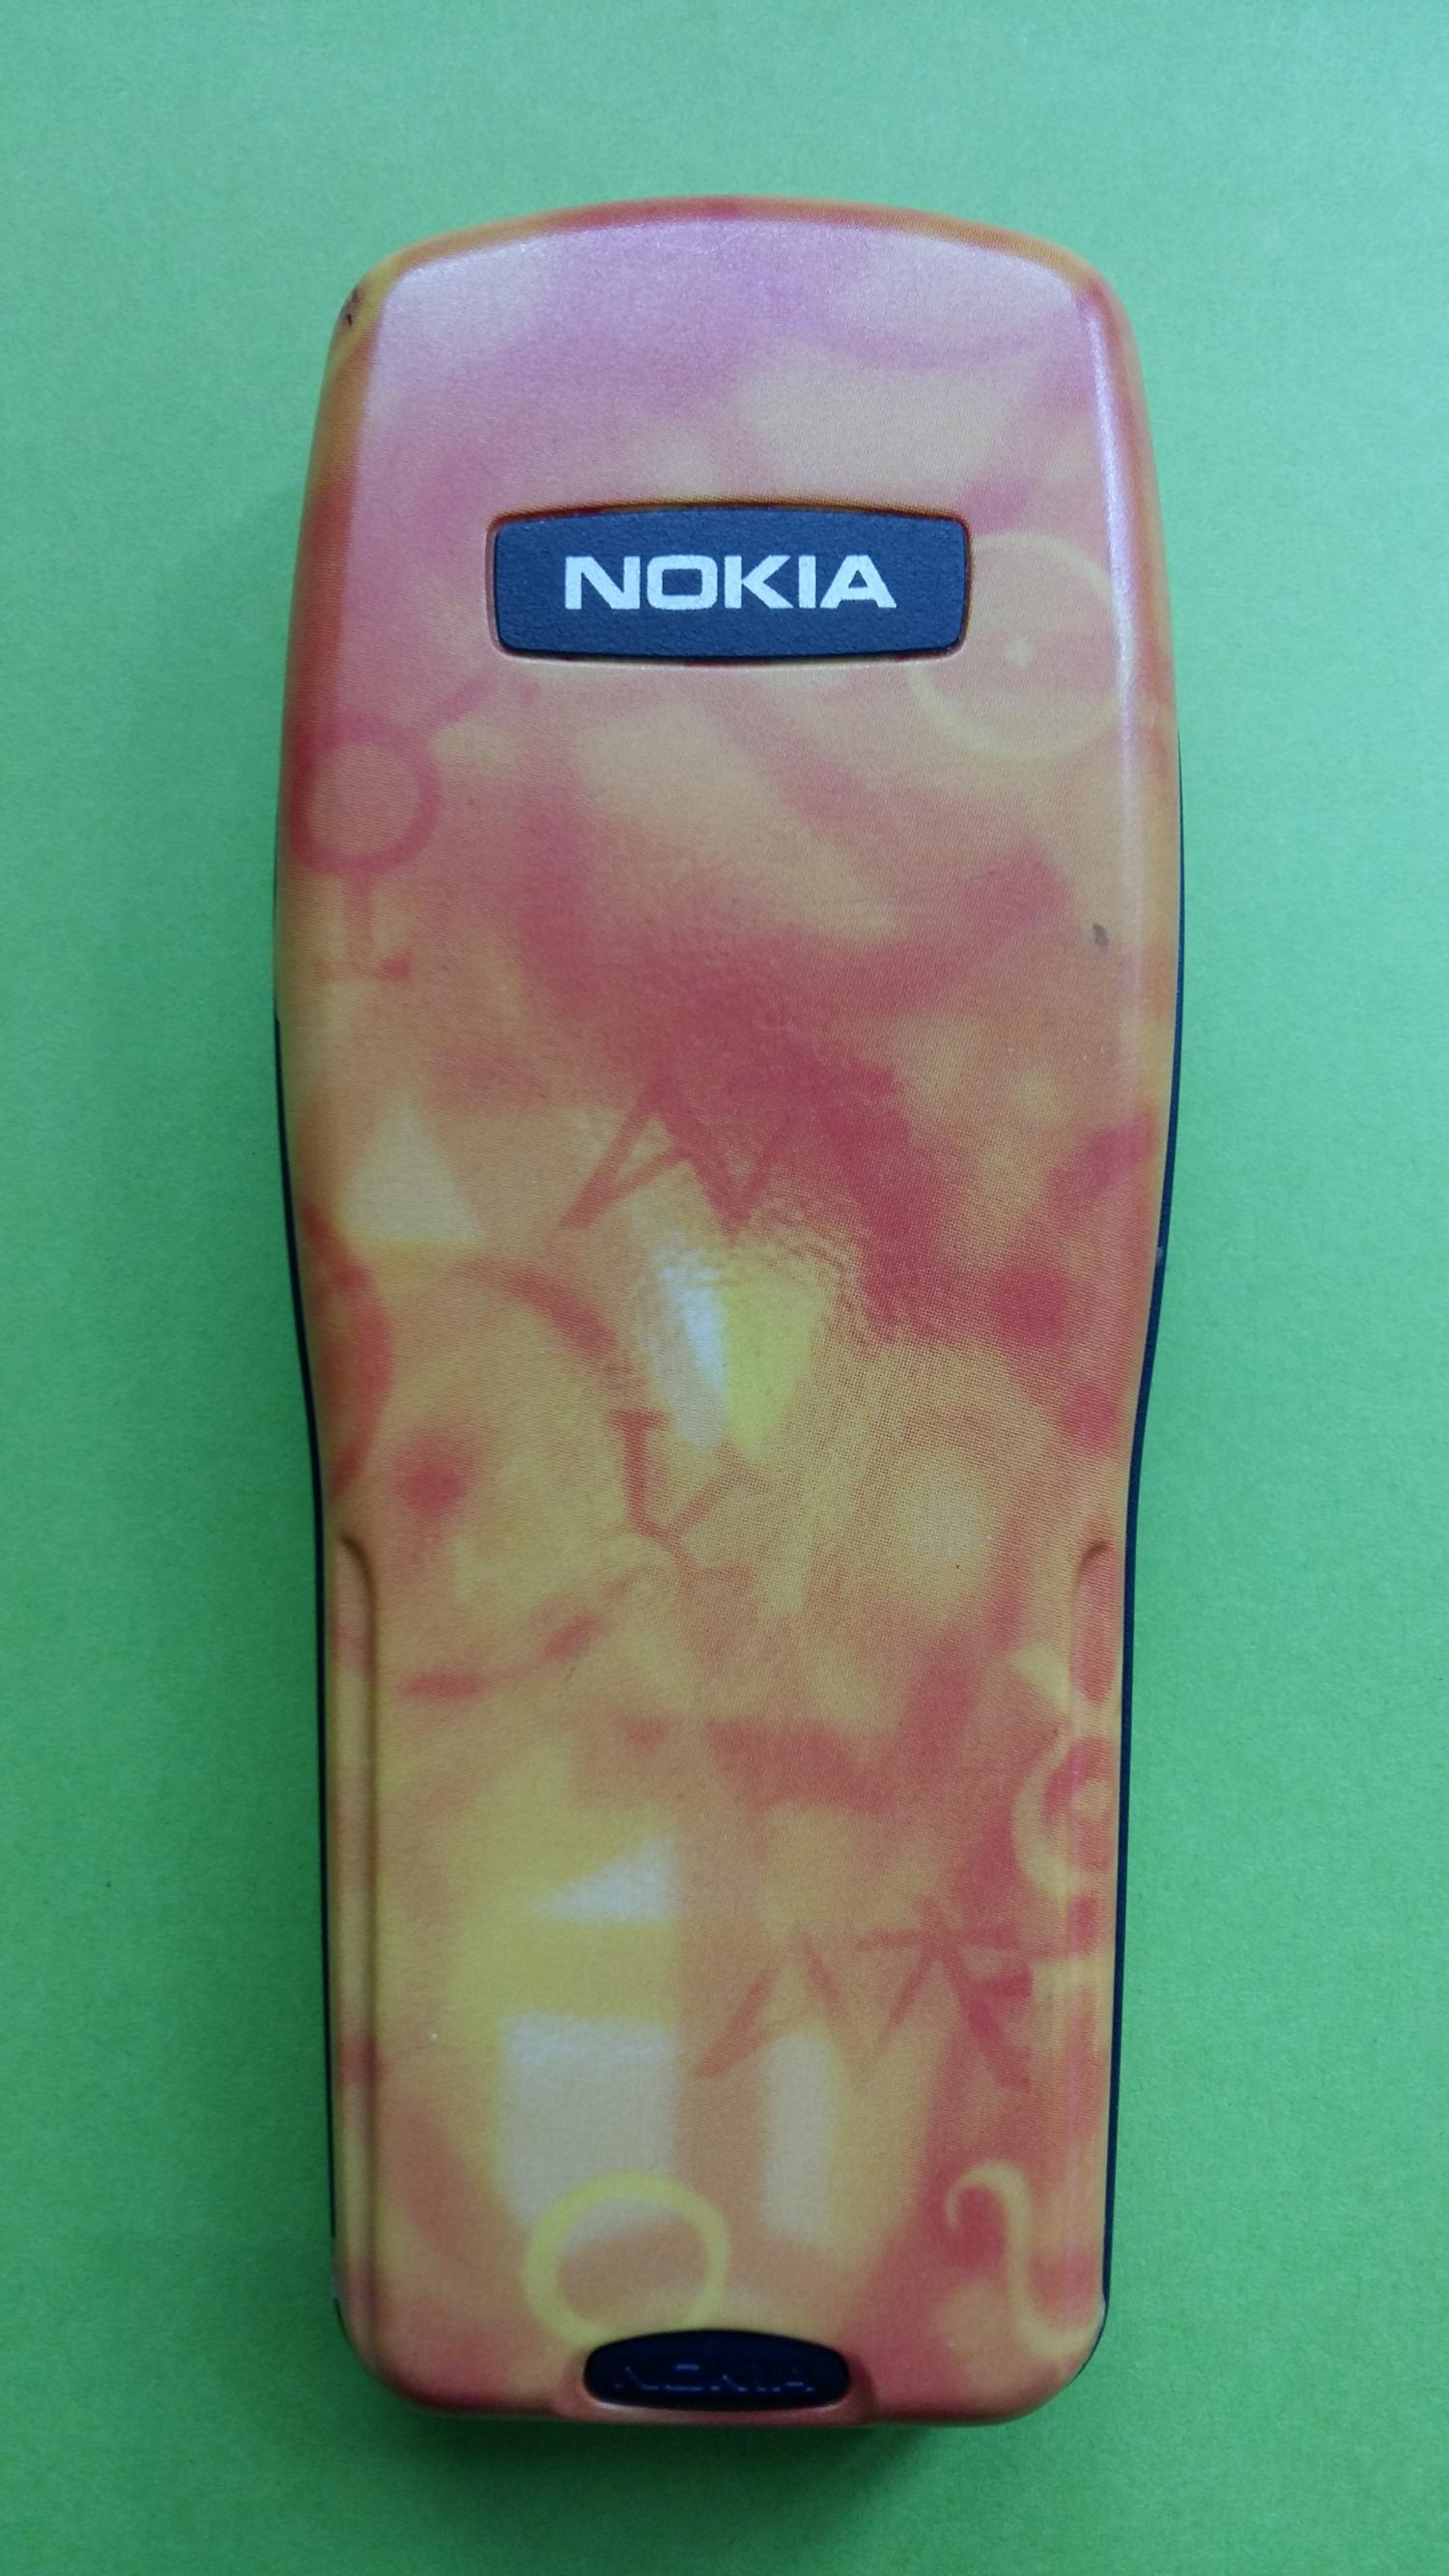 image-7305546-Nokia 3210 (4)2.jpg